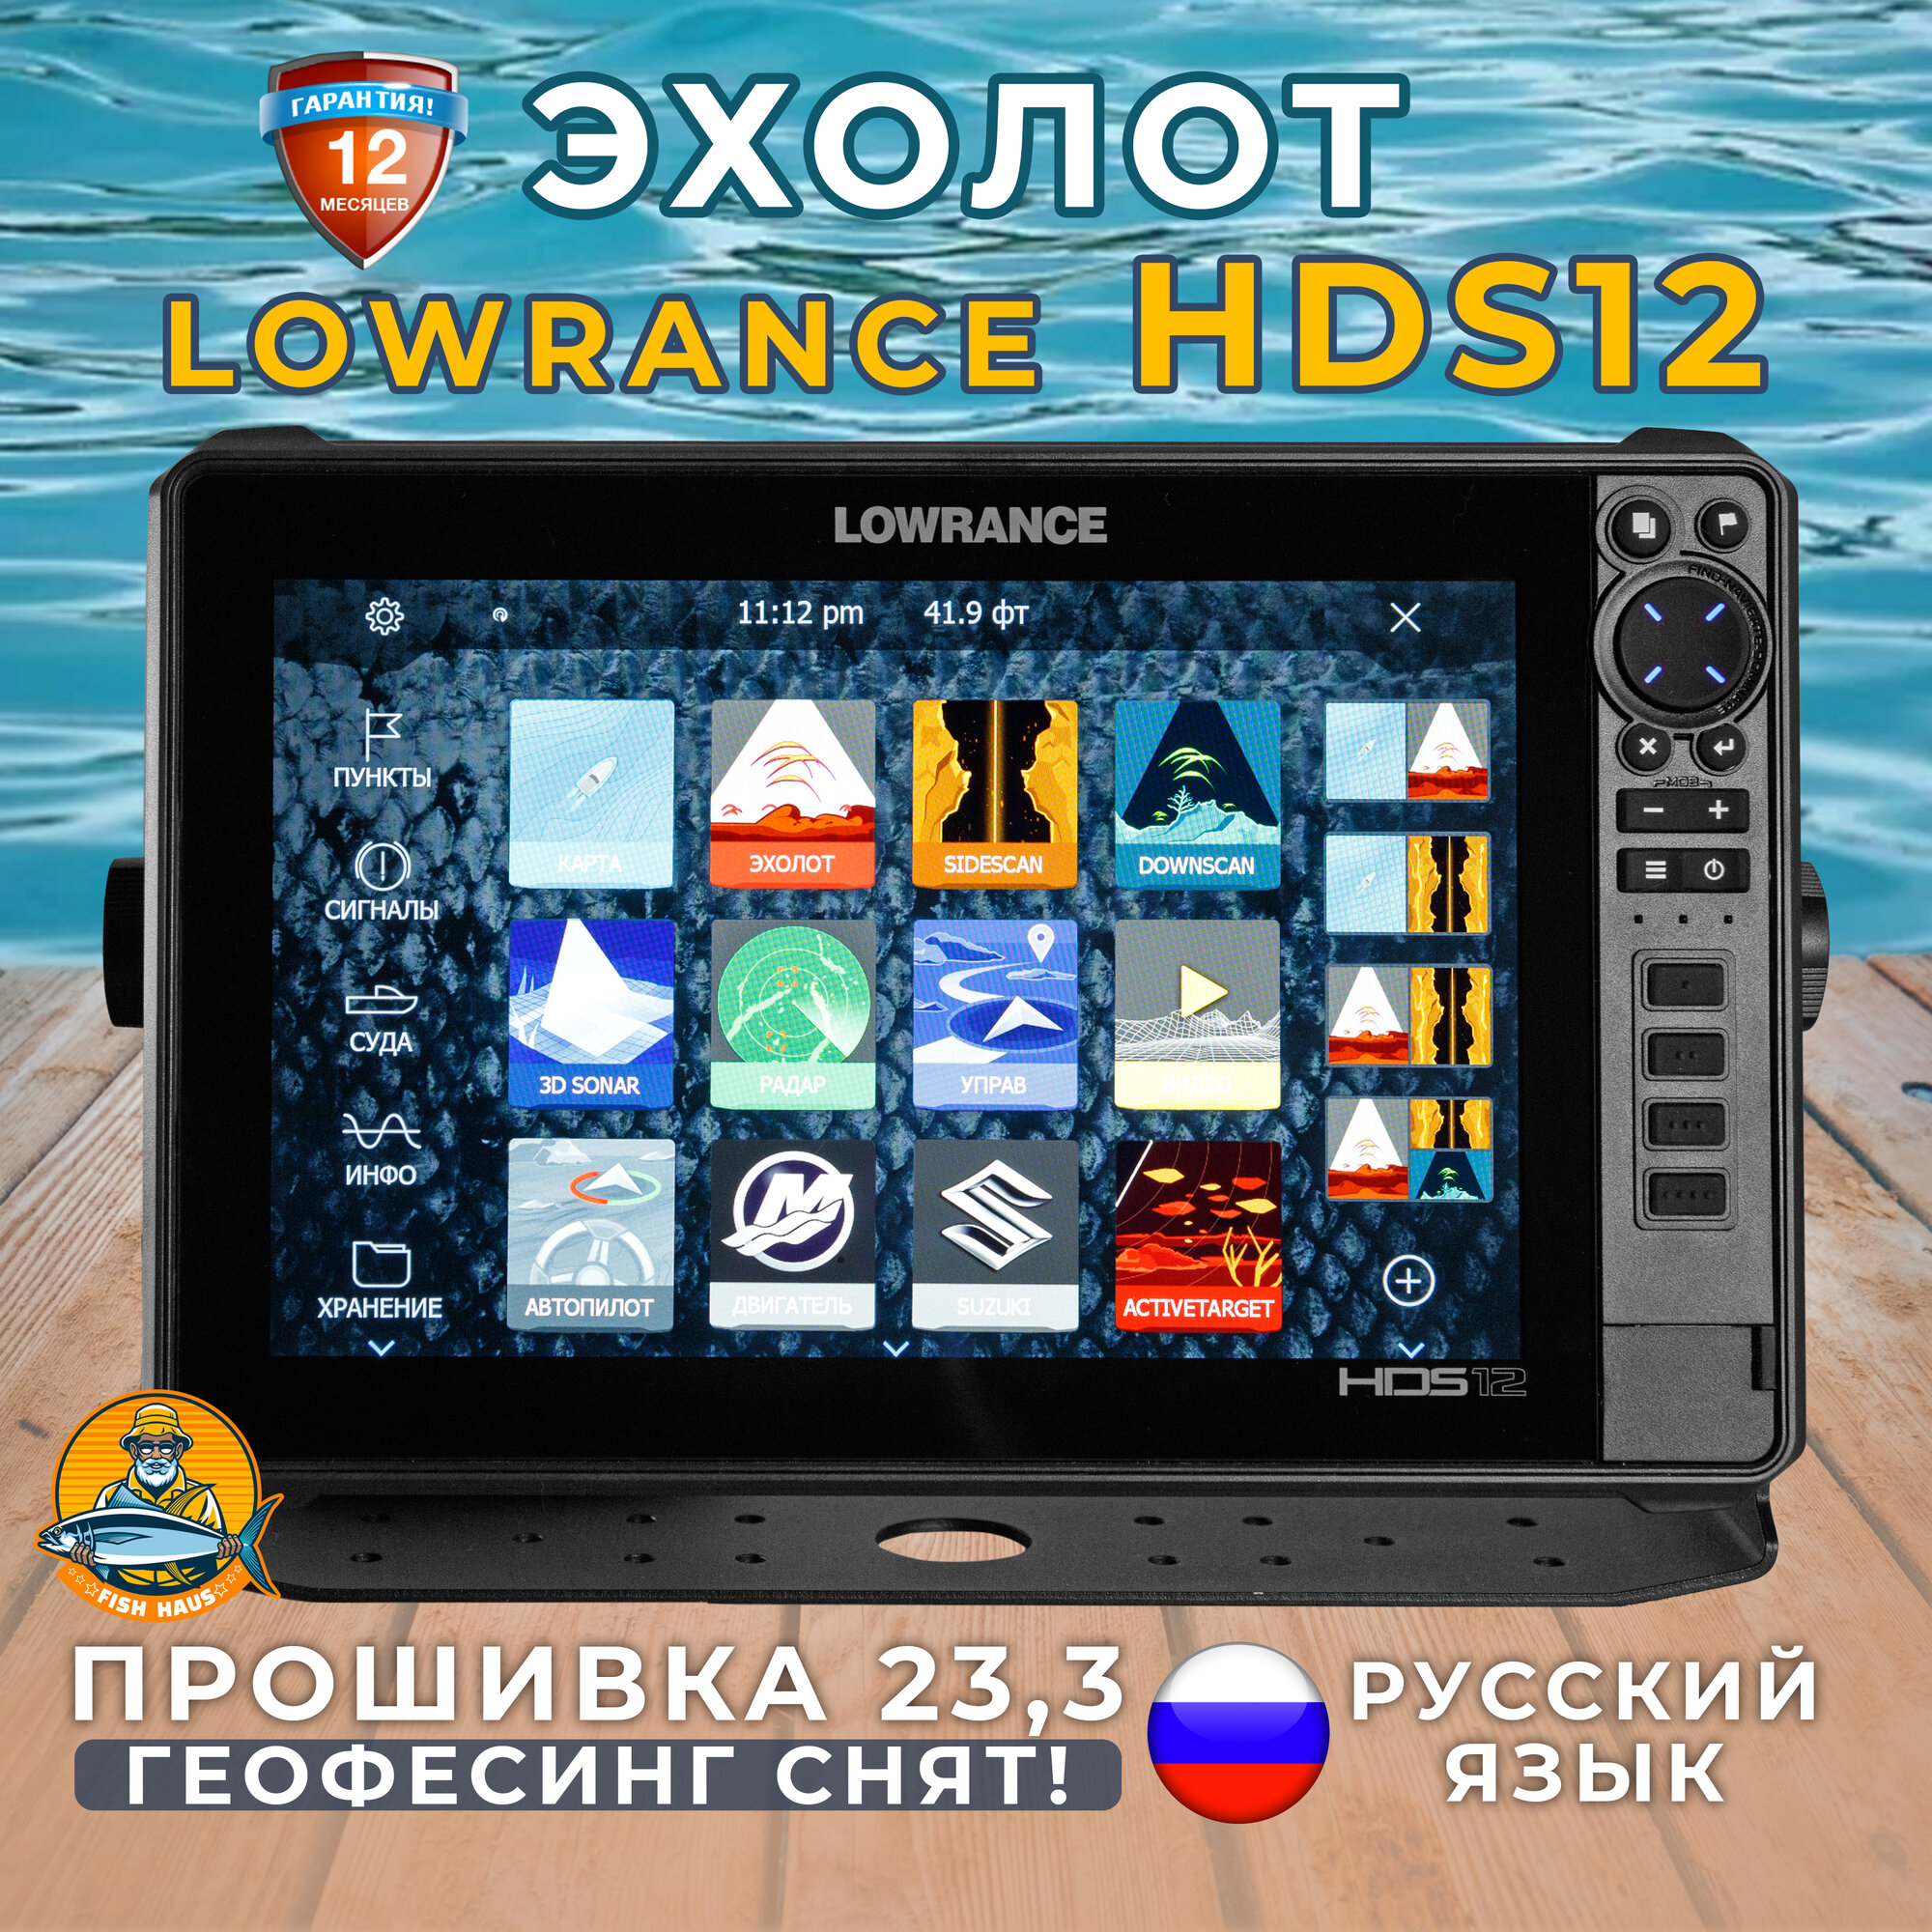 Эхолот-картплоттер Lowrance HDS 12 live с русским меню и защитной крышкой,23.3,версия 33 в обновлённой упаковке